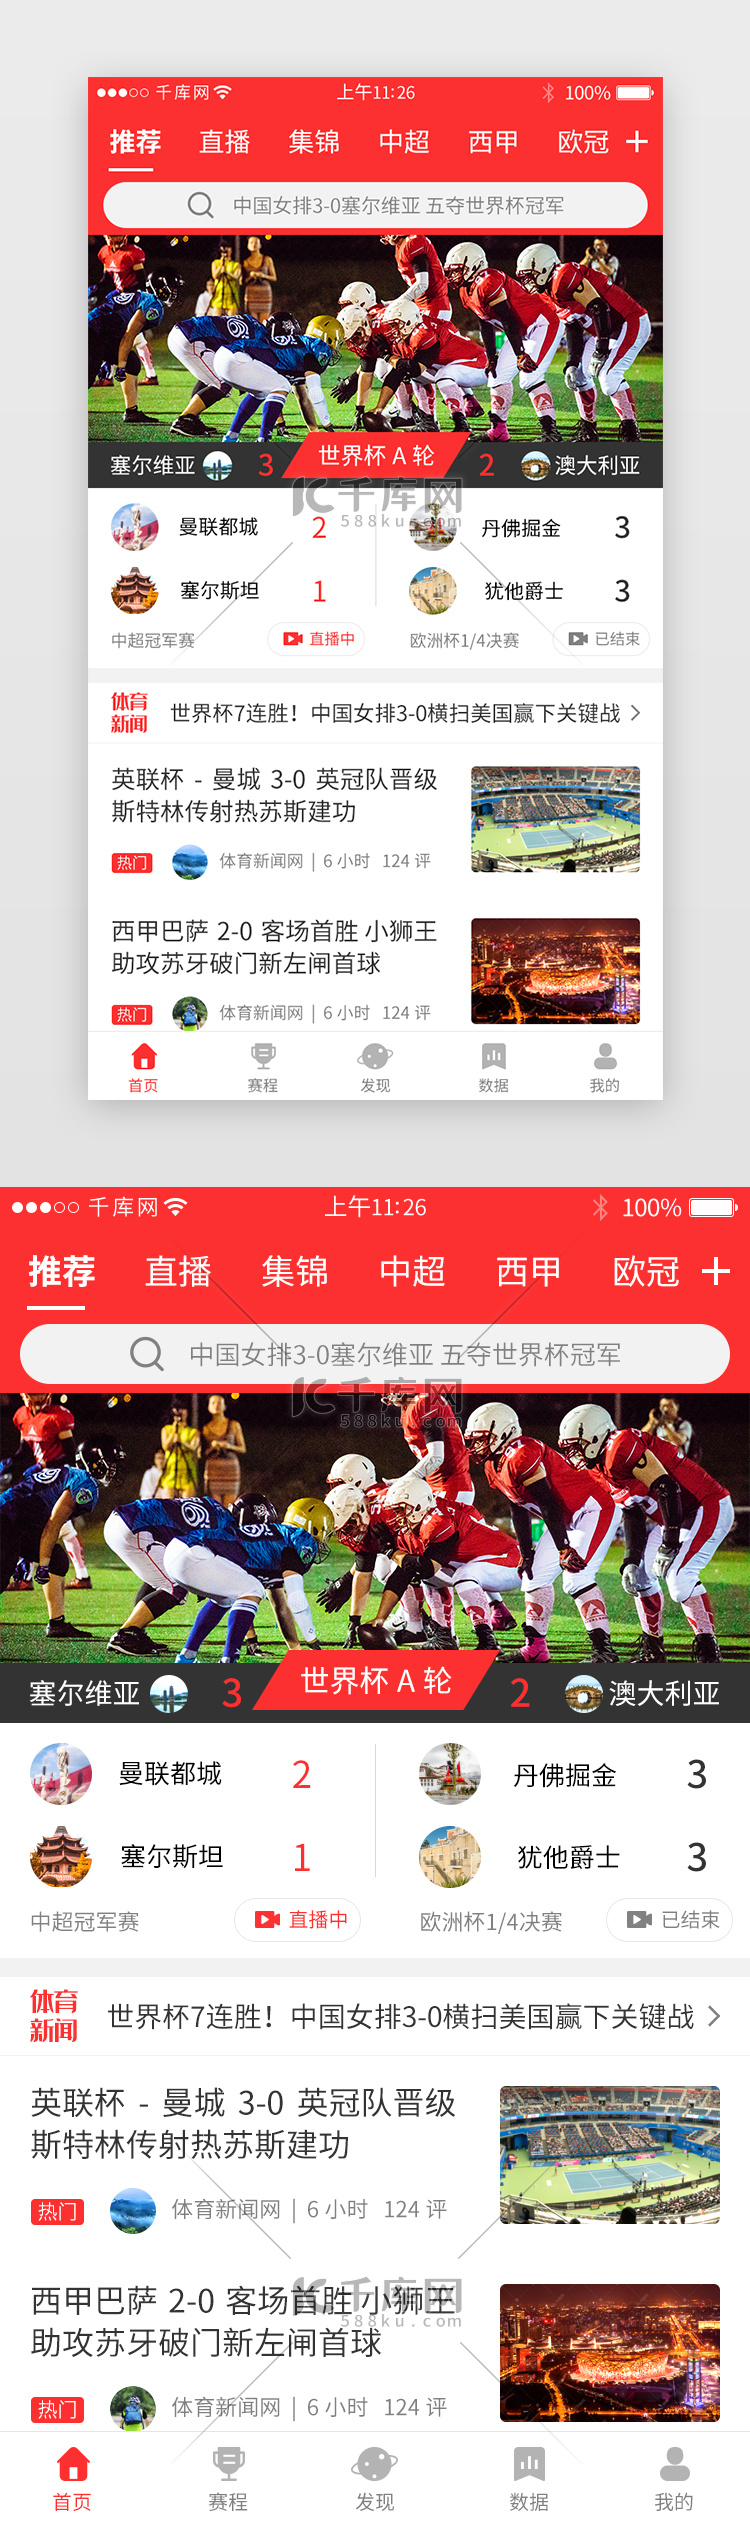 红色系体育新闻app主界面